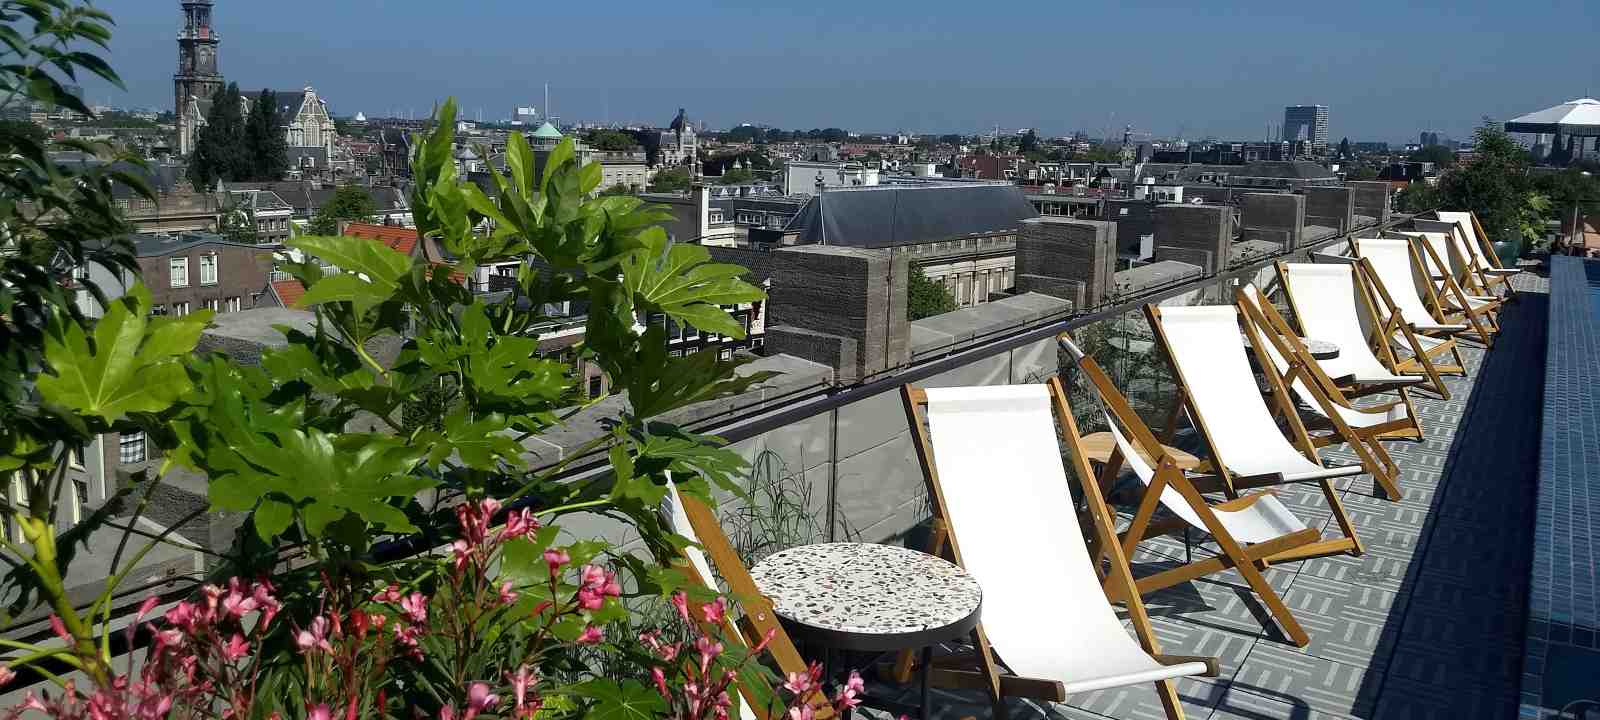 Dachterrasse mit Bepflanzung und Liegestühlen